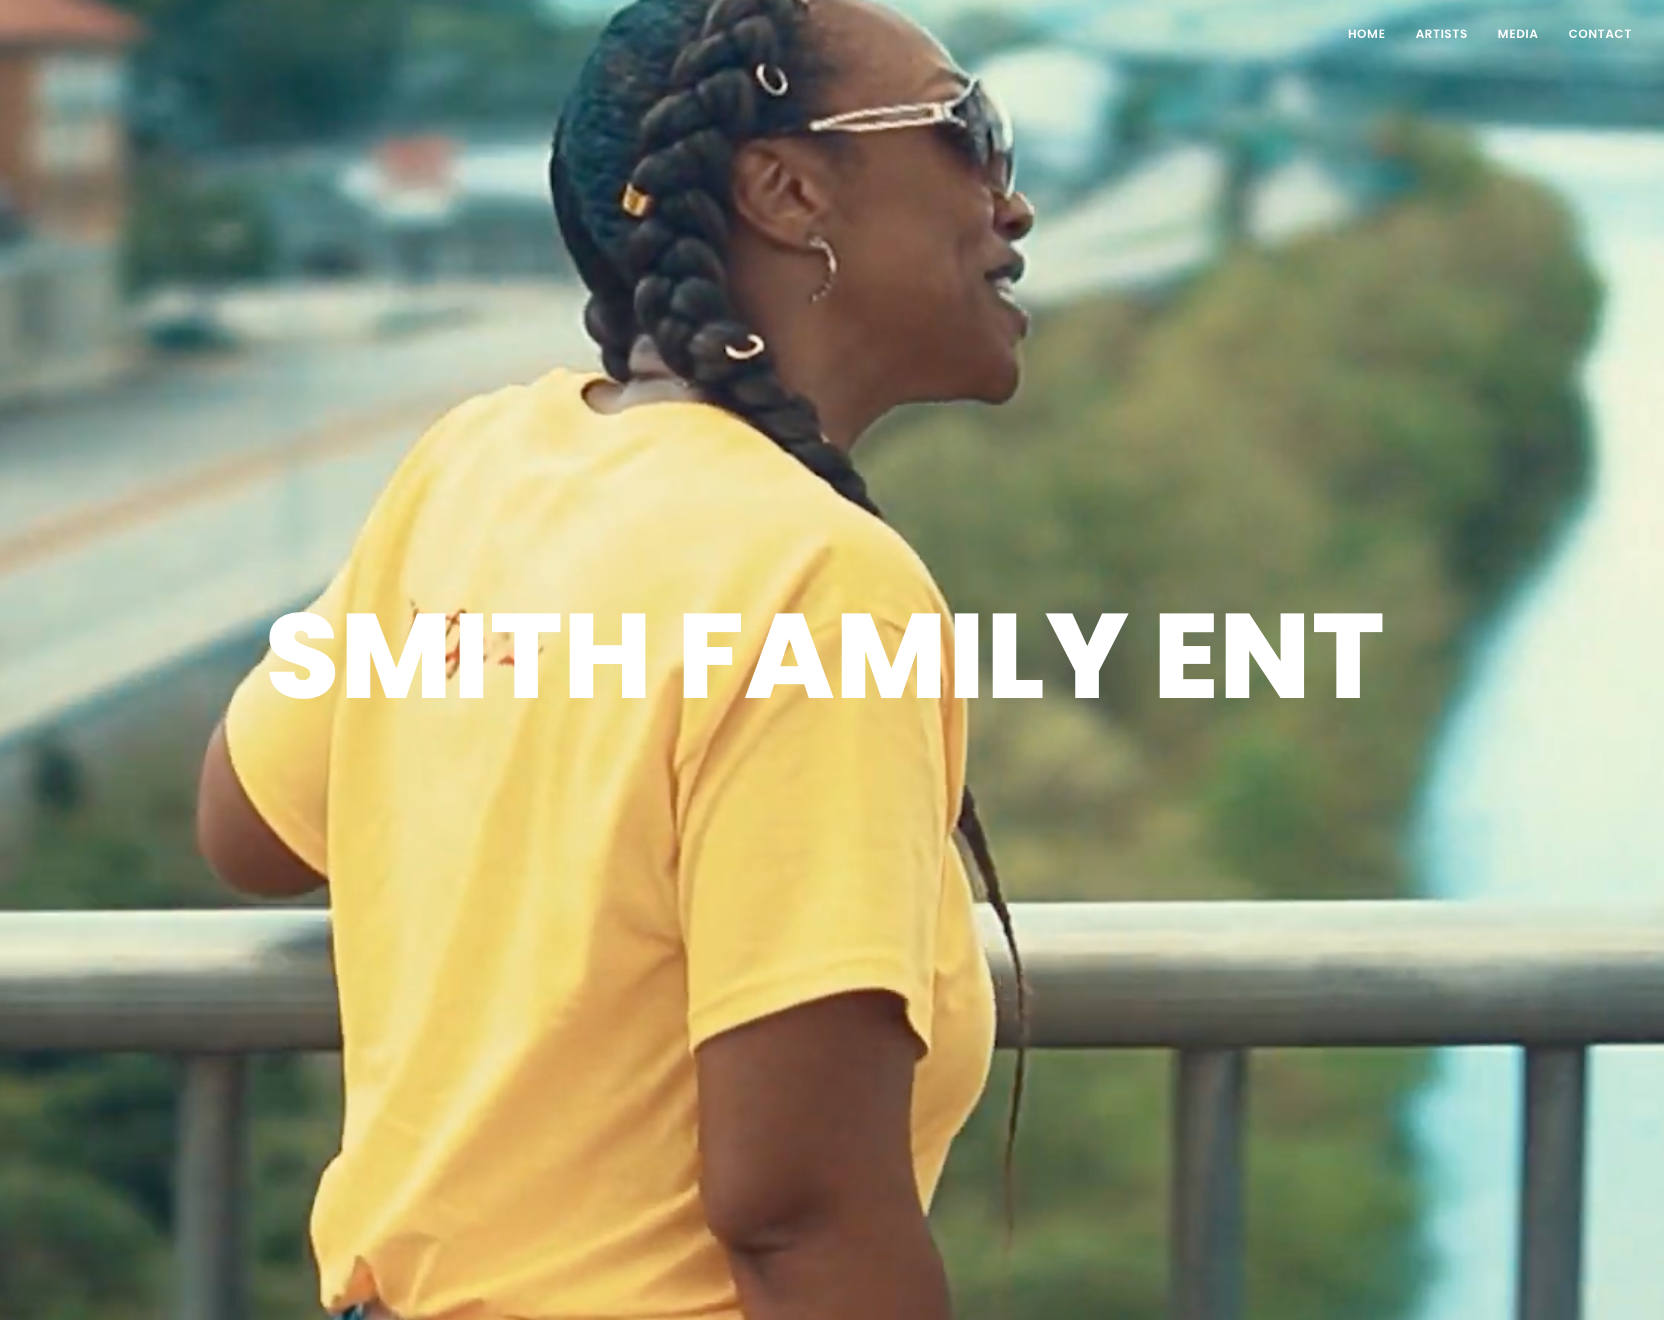 Smith Family Ent